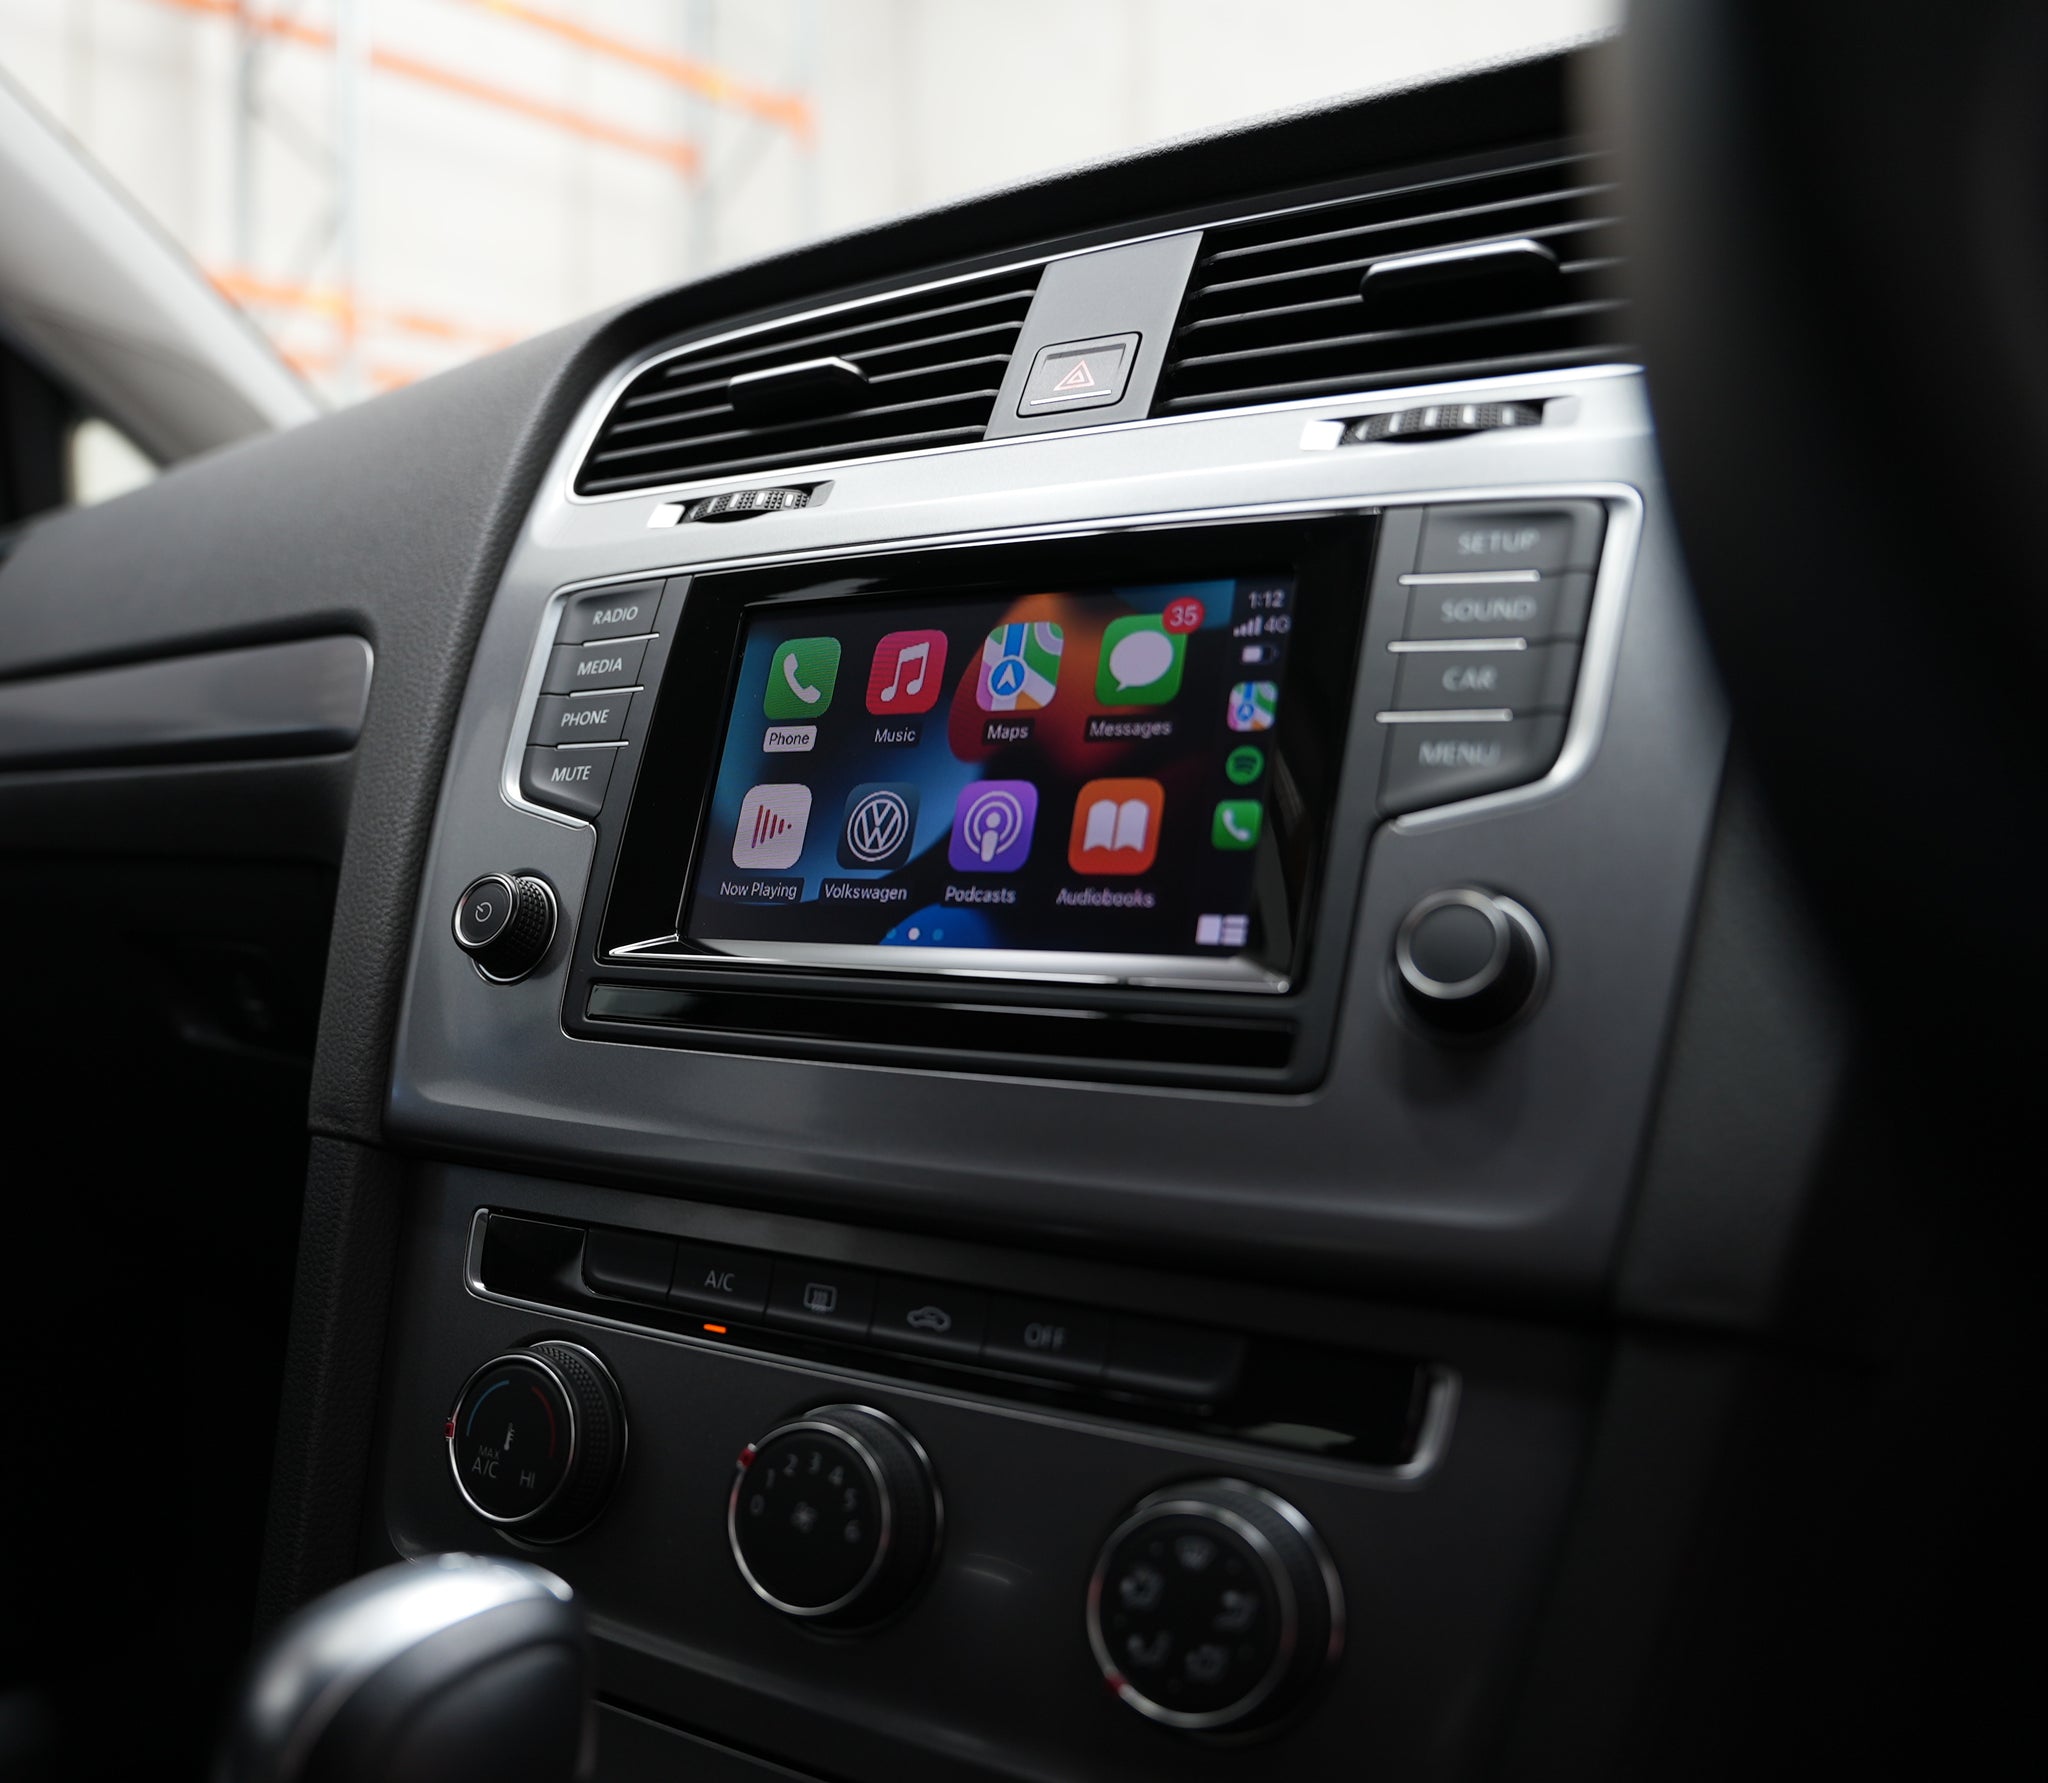 Carplay Nachrüstung im VW Golf 7, Ersteinrichtung vom Ampire LDS-Interface  zur Nachrüstung von Apple Carplay bzw. Android Auto im VW Golf 7. Mehr  Infos zum Produkt findet ihr hier